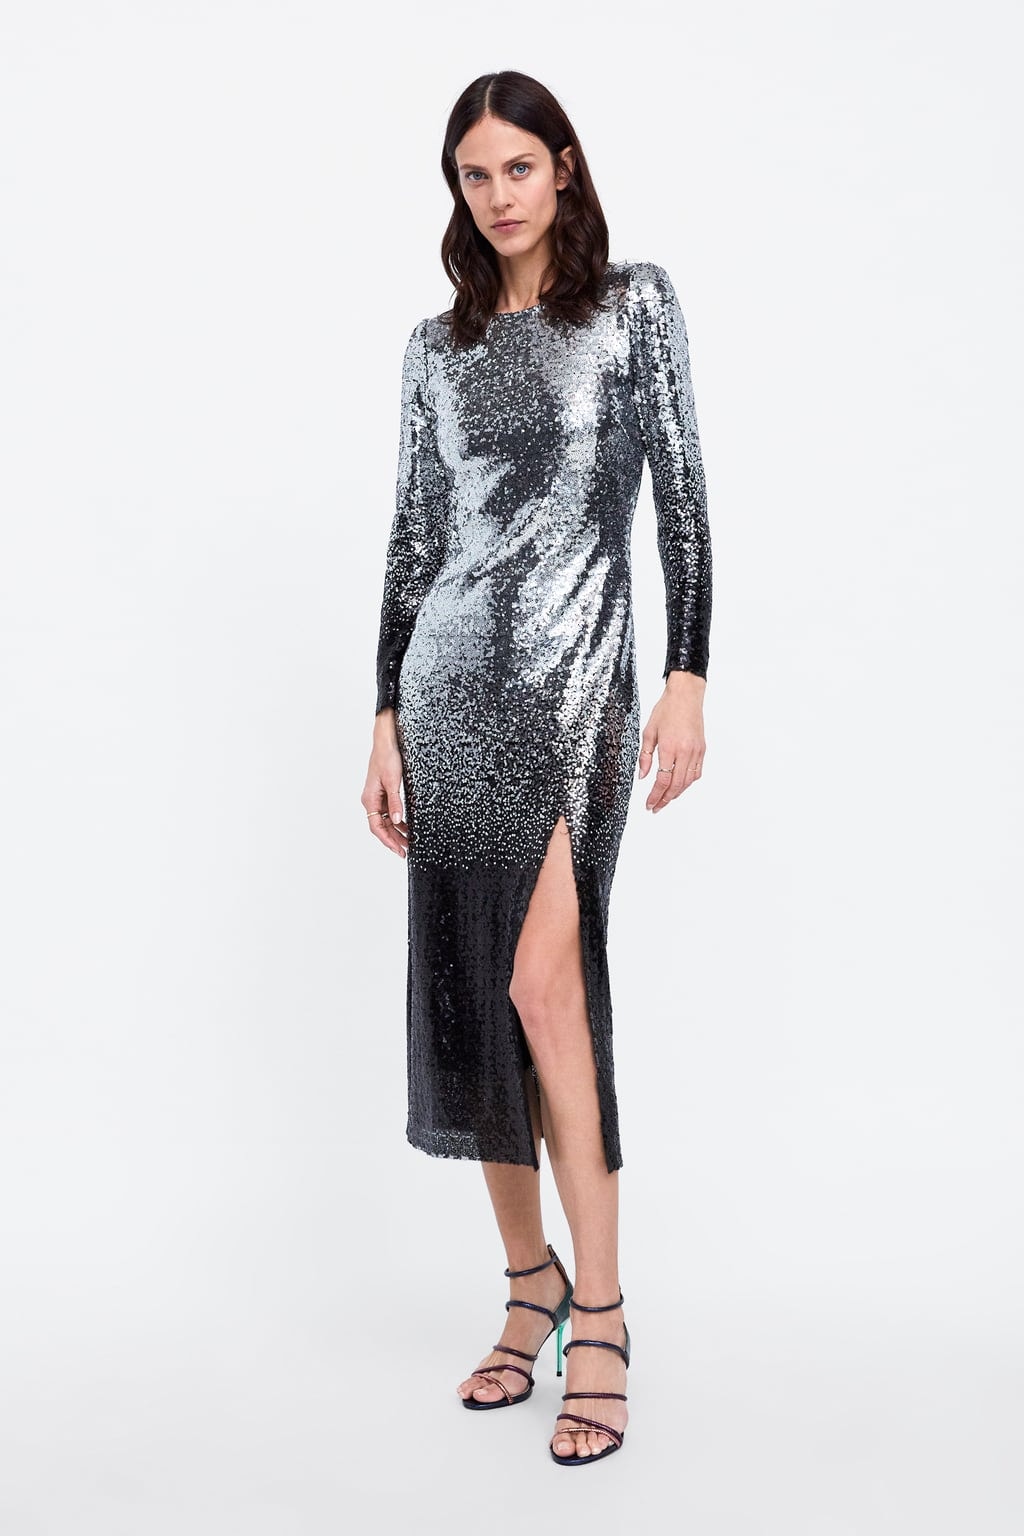 Zara Ombre Sequin Dress